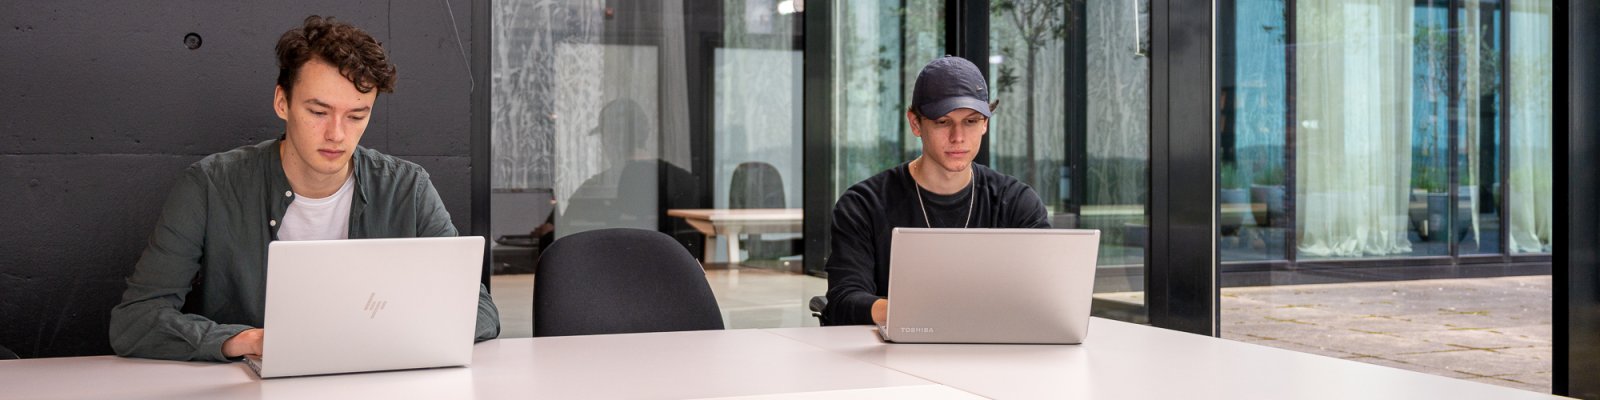 Studenten met laptops studeren in de Universiteitsbibliotheek Science Park